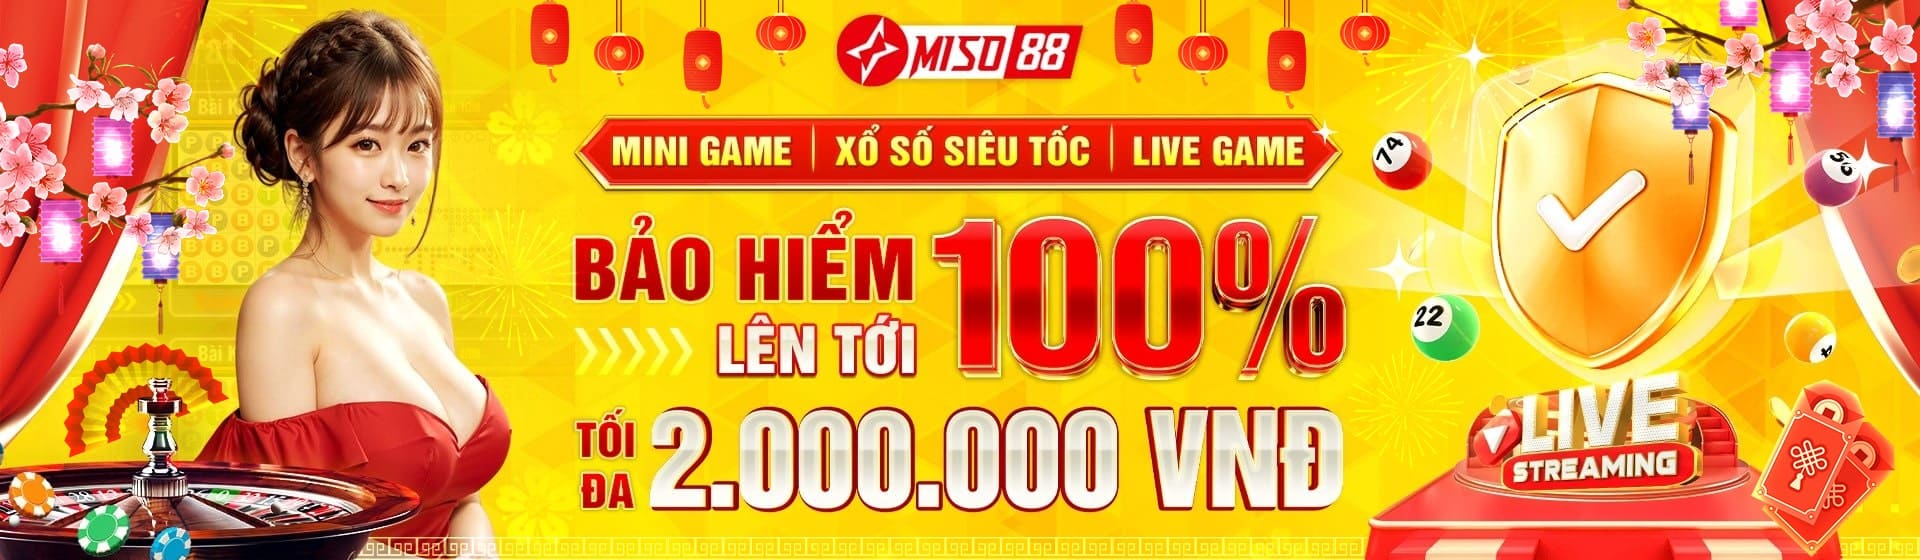 miso88 banner 1